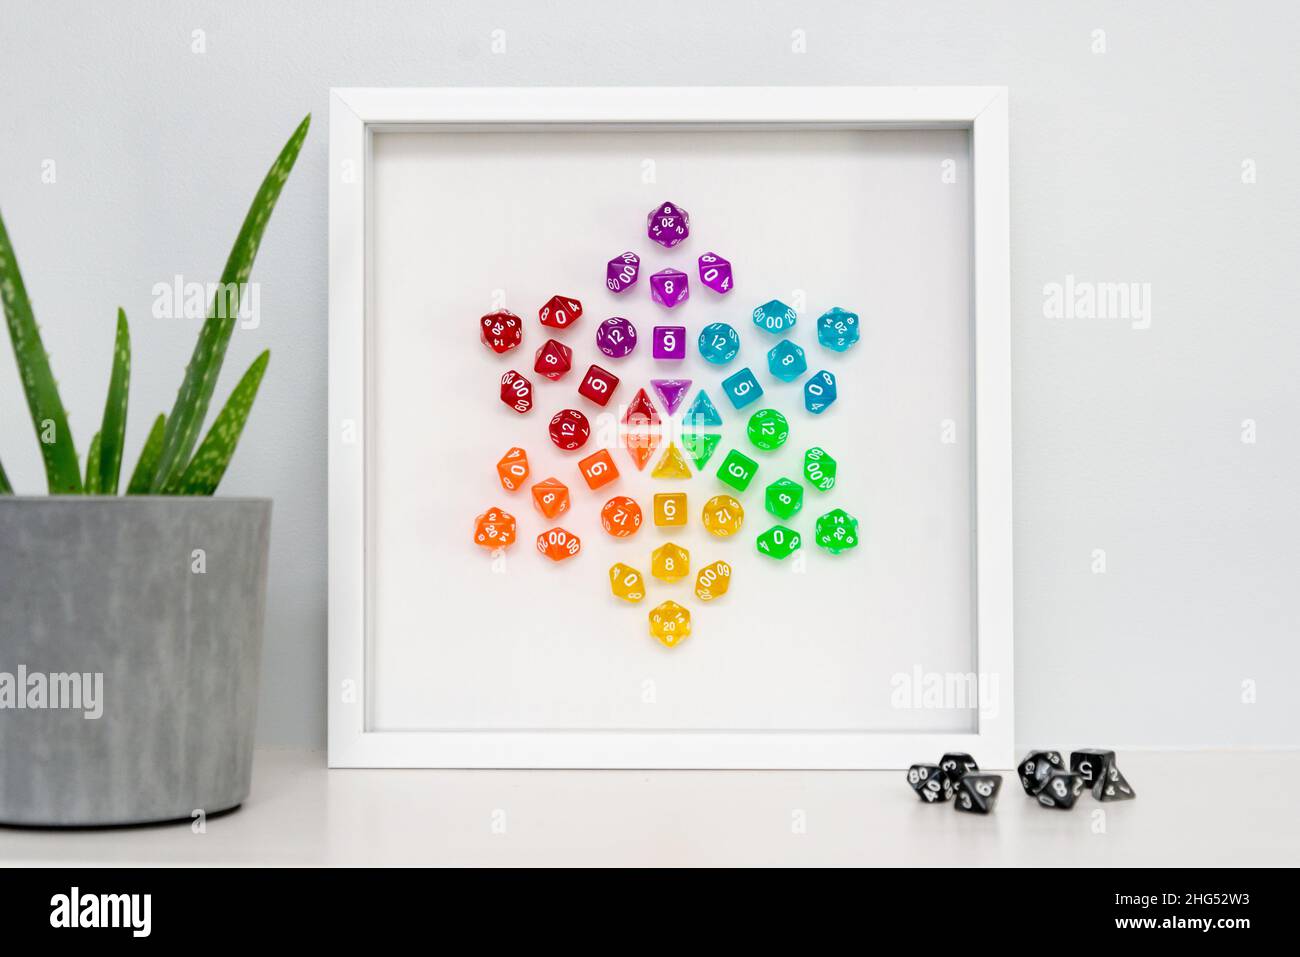 Un pezzo incorniciato di arte mediatica mista: Un mandala creato con dadi poliedrici arcobaleno utilizzati per giochi di ruolo come Dungeorns & Dragons. Foto Stock